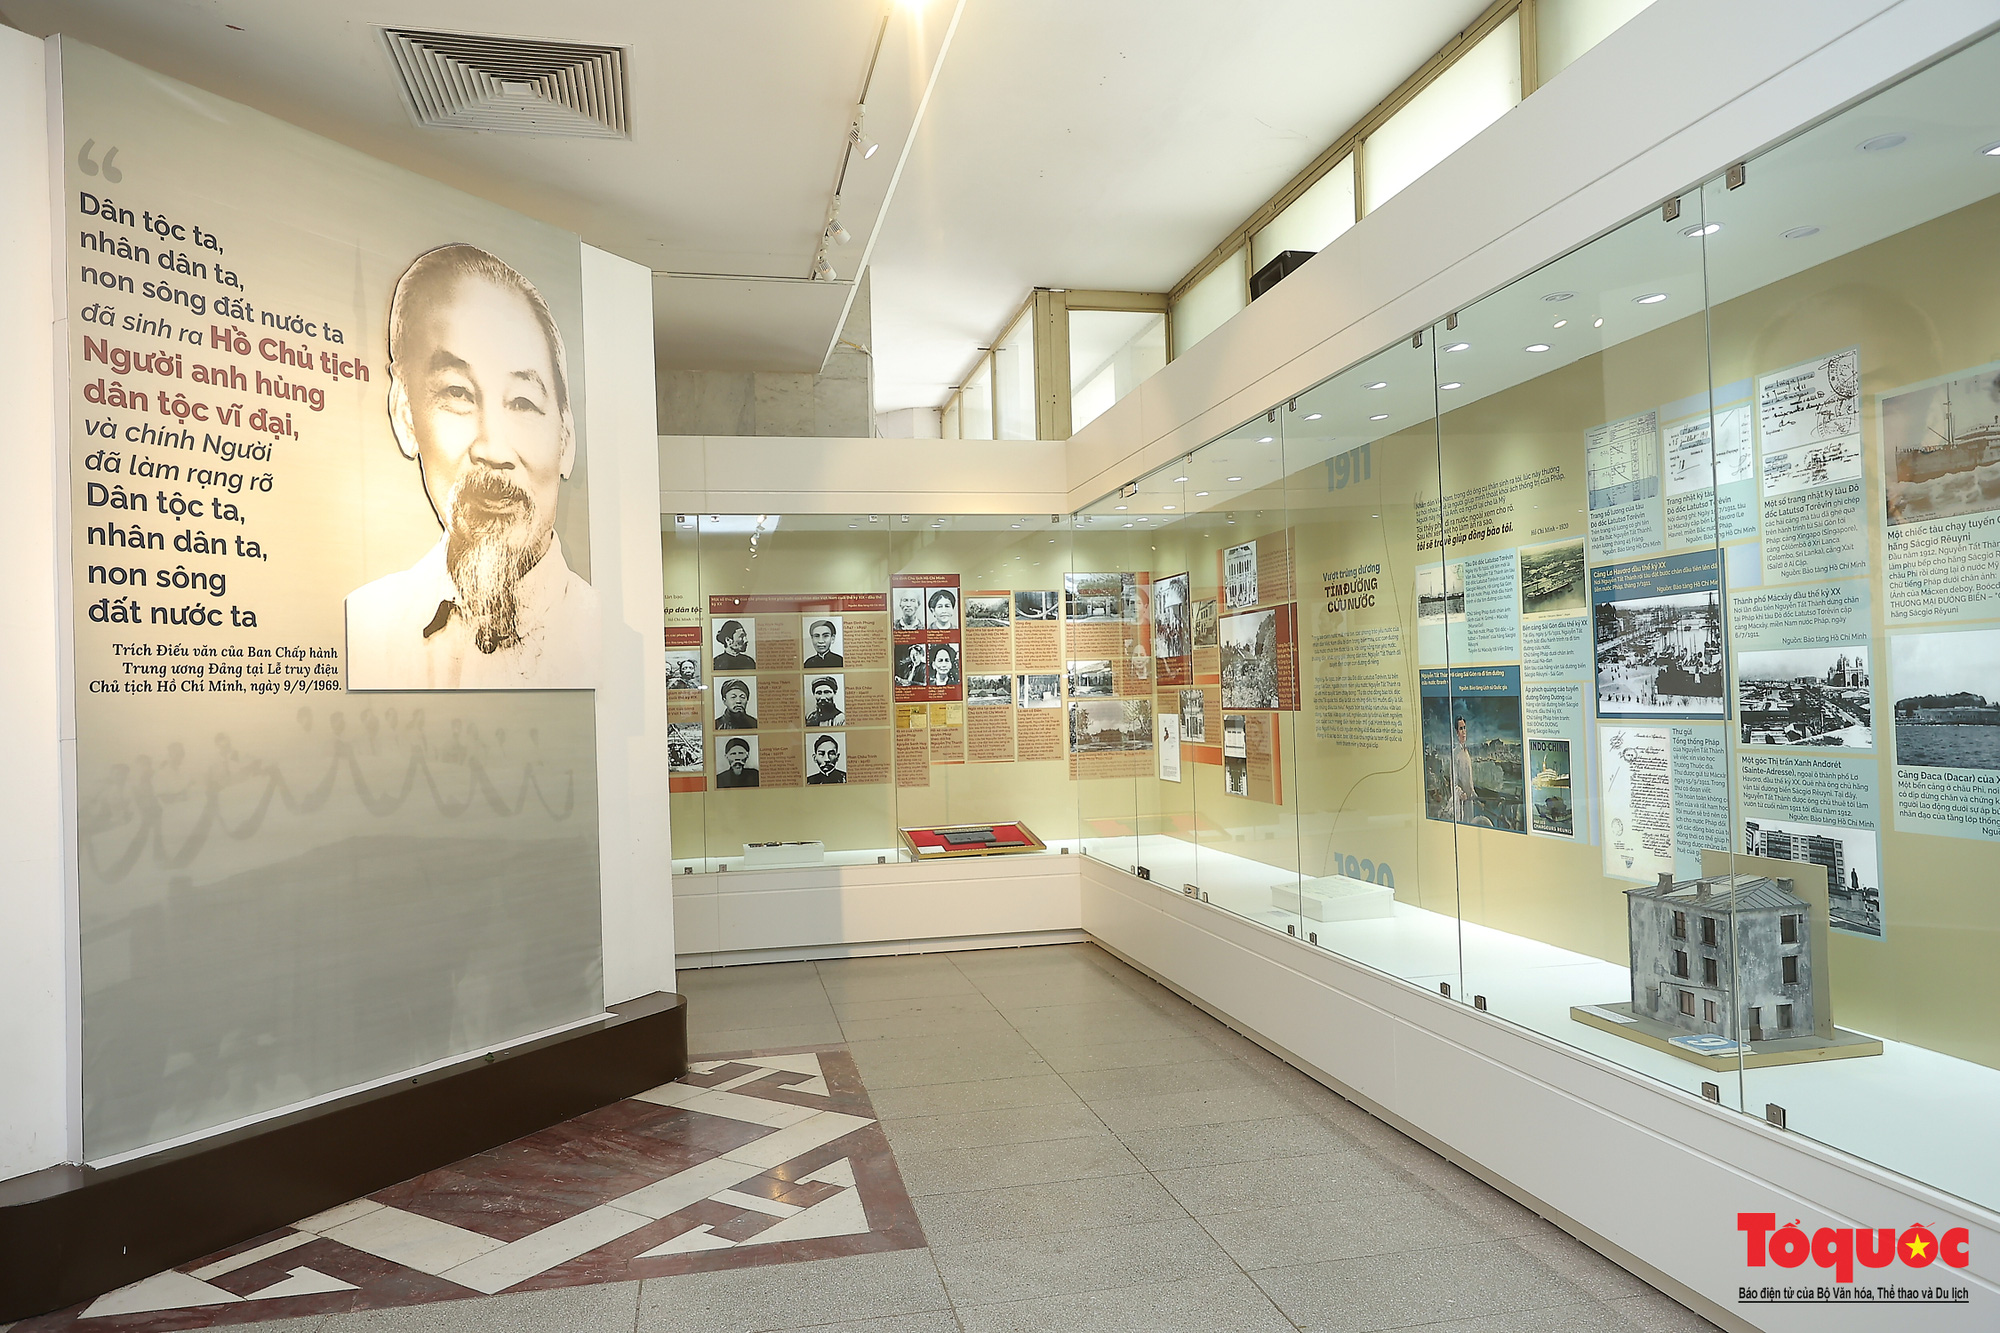 Giới thiệu hơn 300 ảnh, tài liệu và hiện vật về Bác Hồ ở trưng bày chuyên đề “Người đi tìm hình của nước” - Ảnh 18.